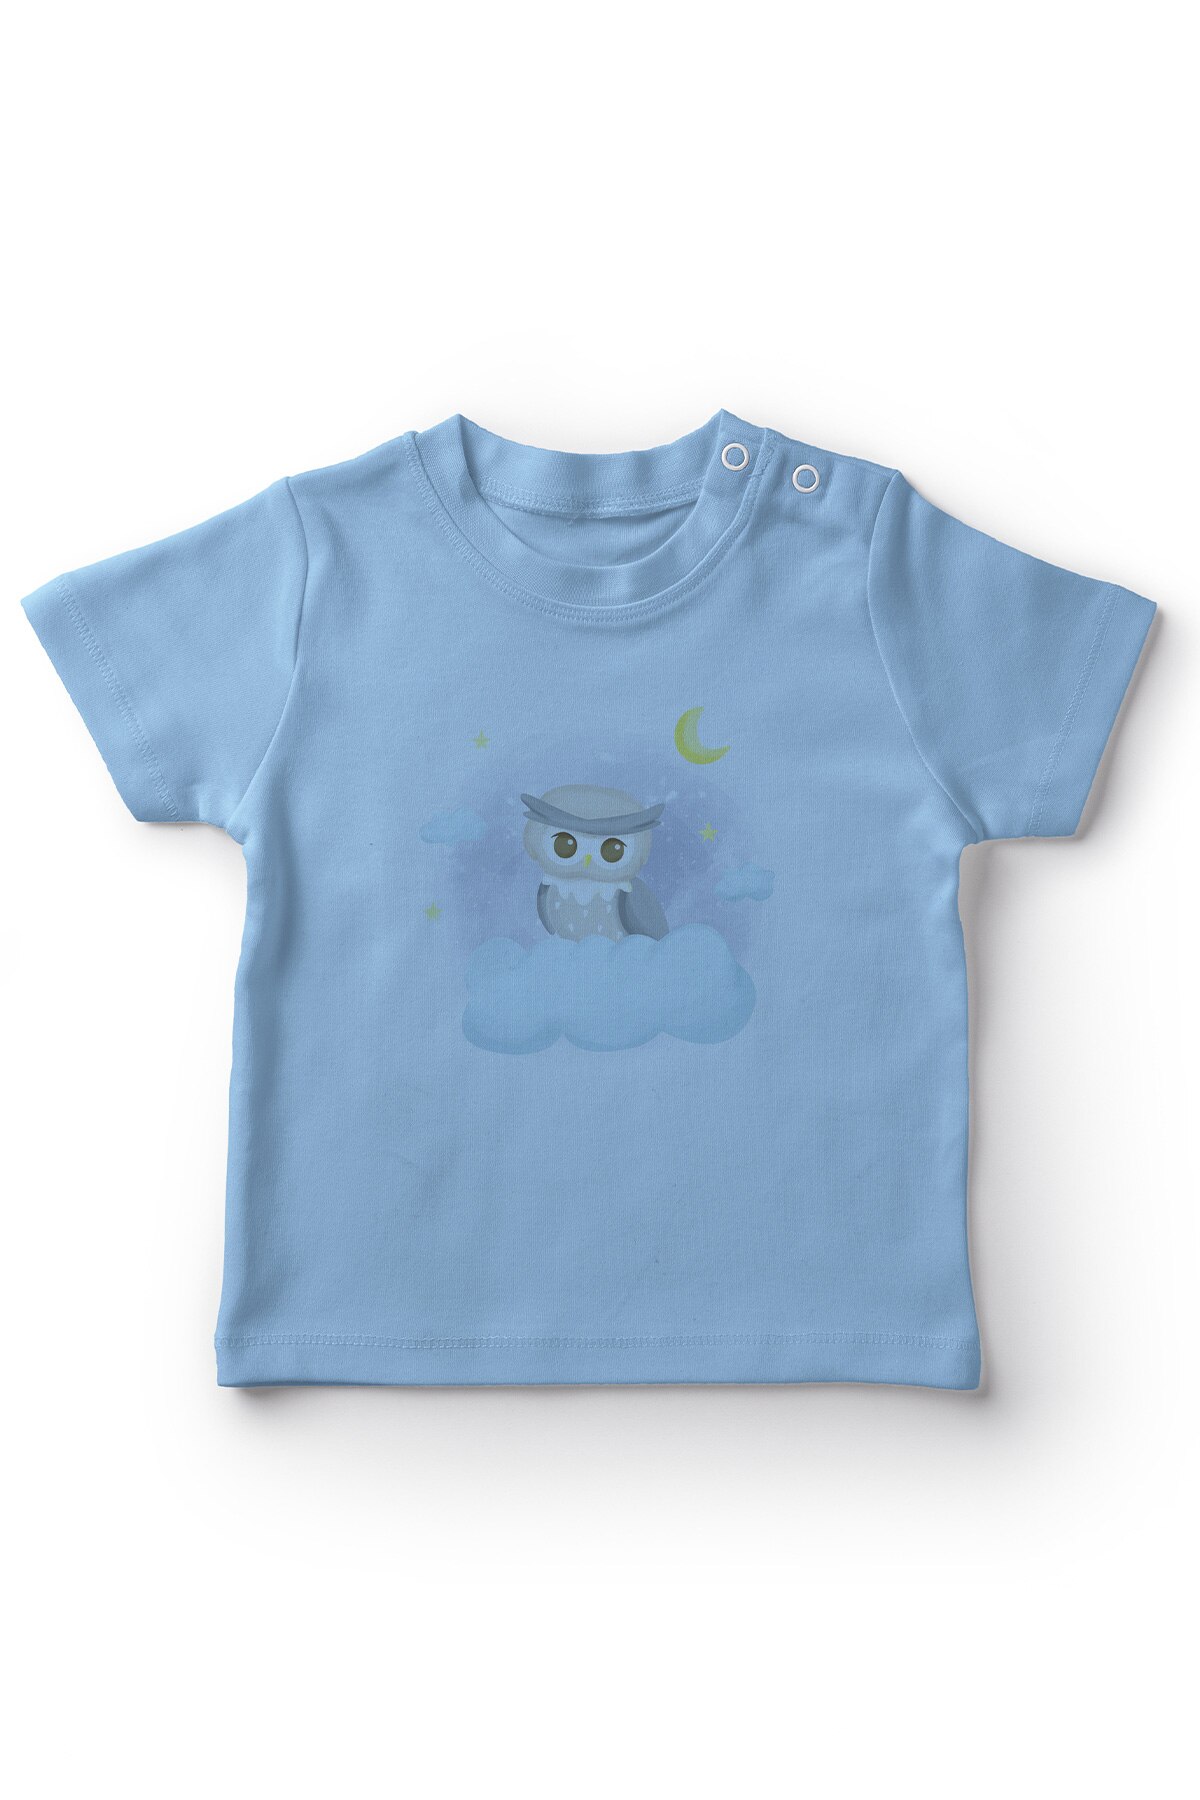 Angemiel Baby Wolken Op Uil Jongens Baby T-shirt Blauw